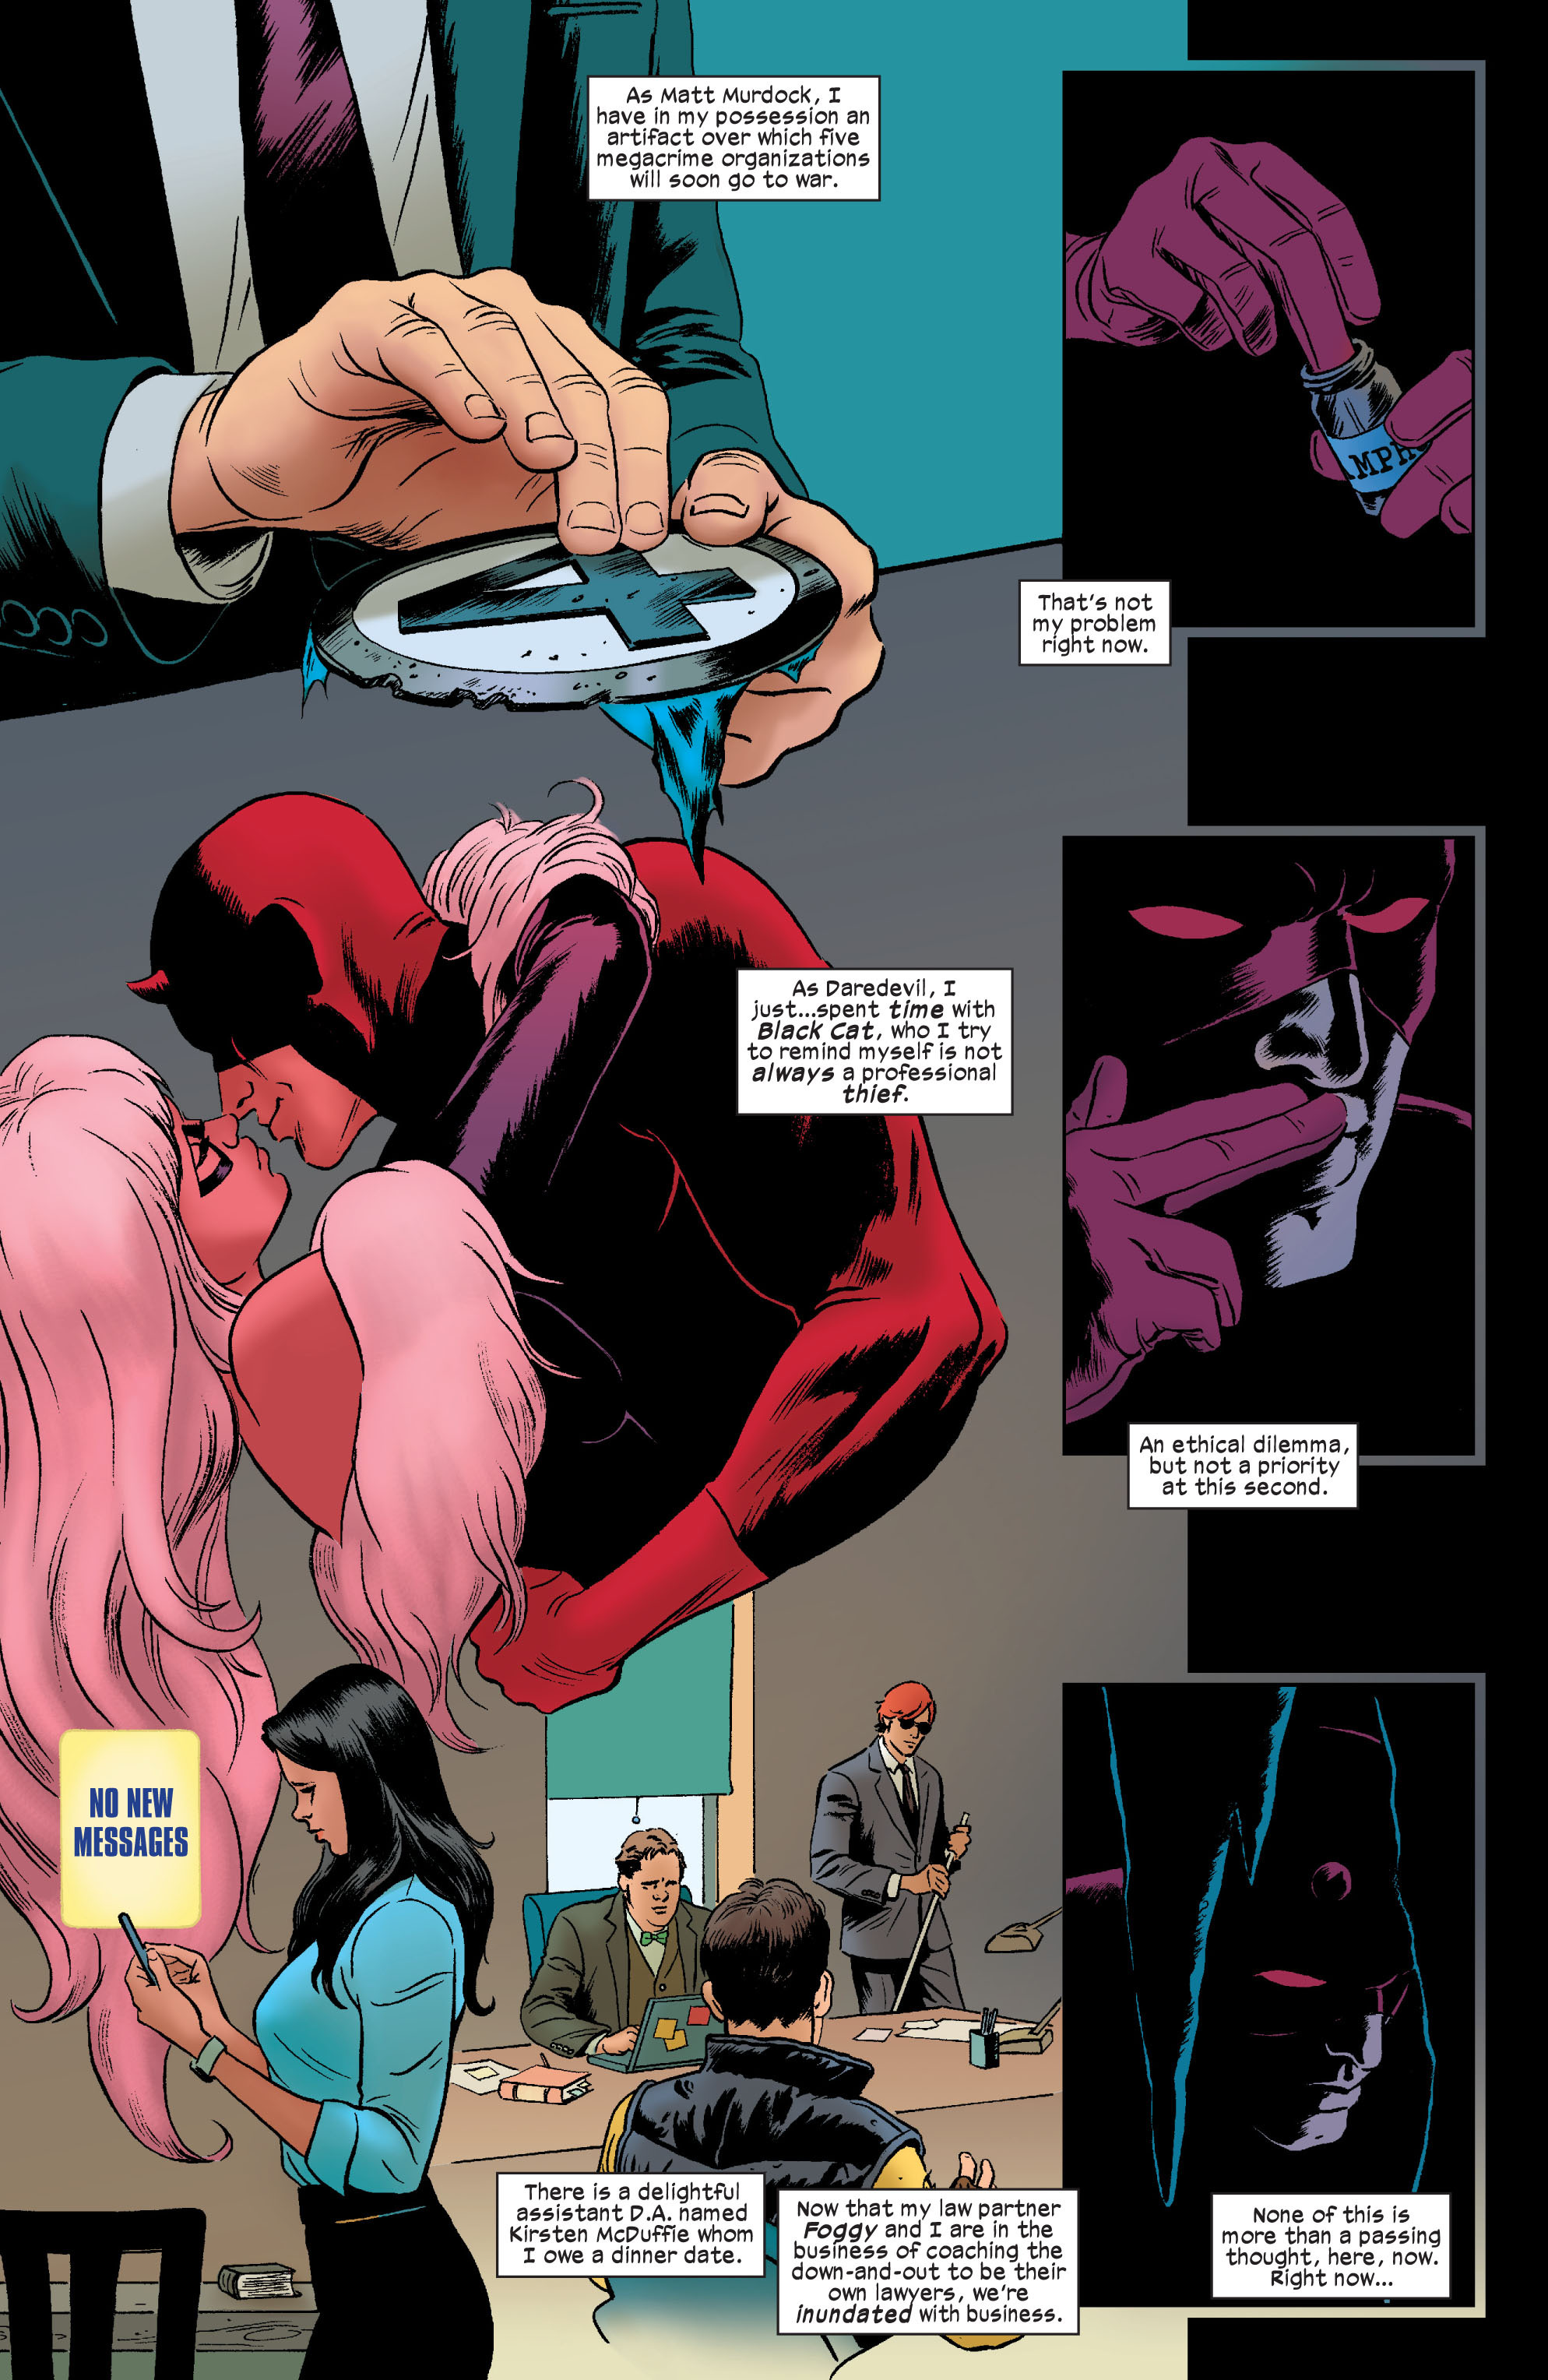 Daredevil Black Cat - Daredevil 2011 Issue 9 | Viewcomic reading comics online for ...